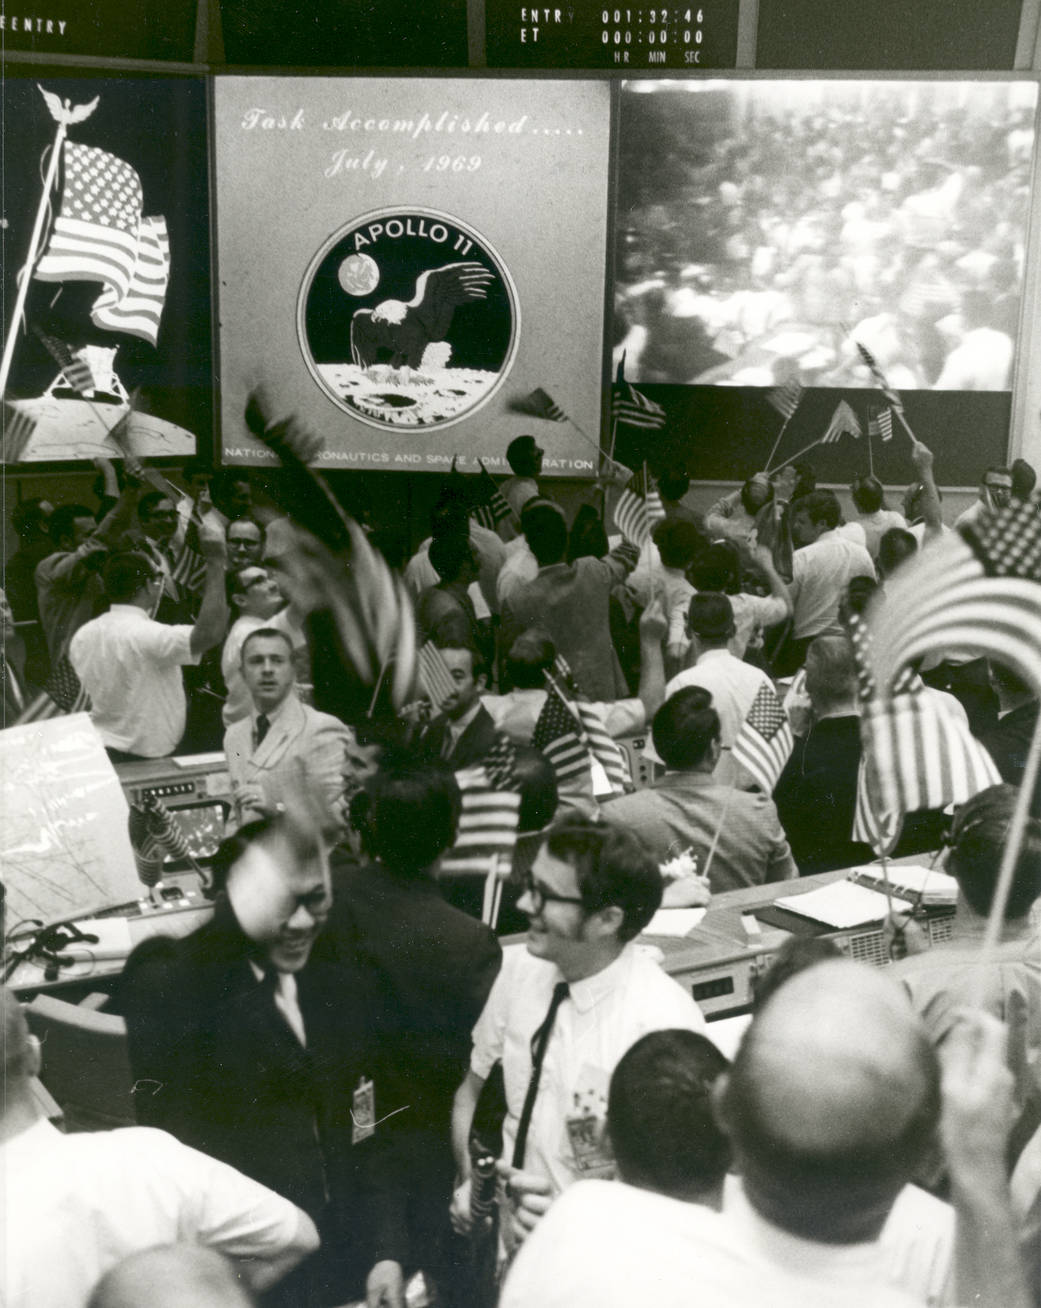 Triumph After Splashdown of Apollo 11 (Image Credit: NASA)